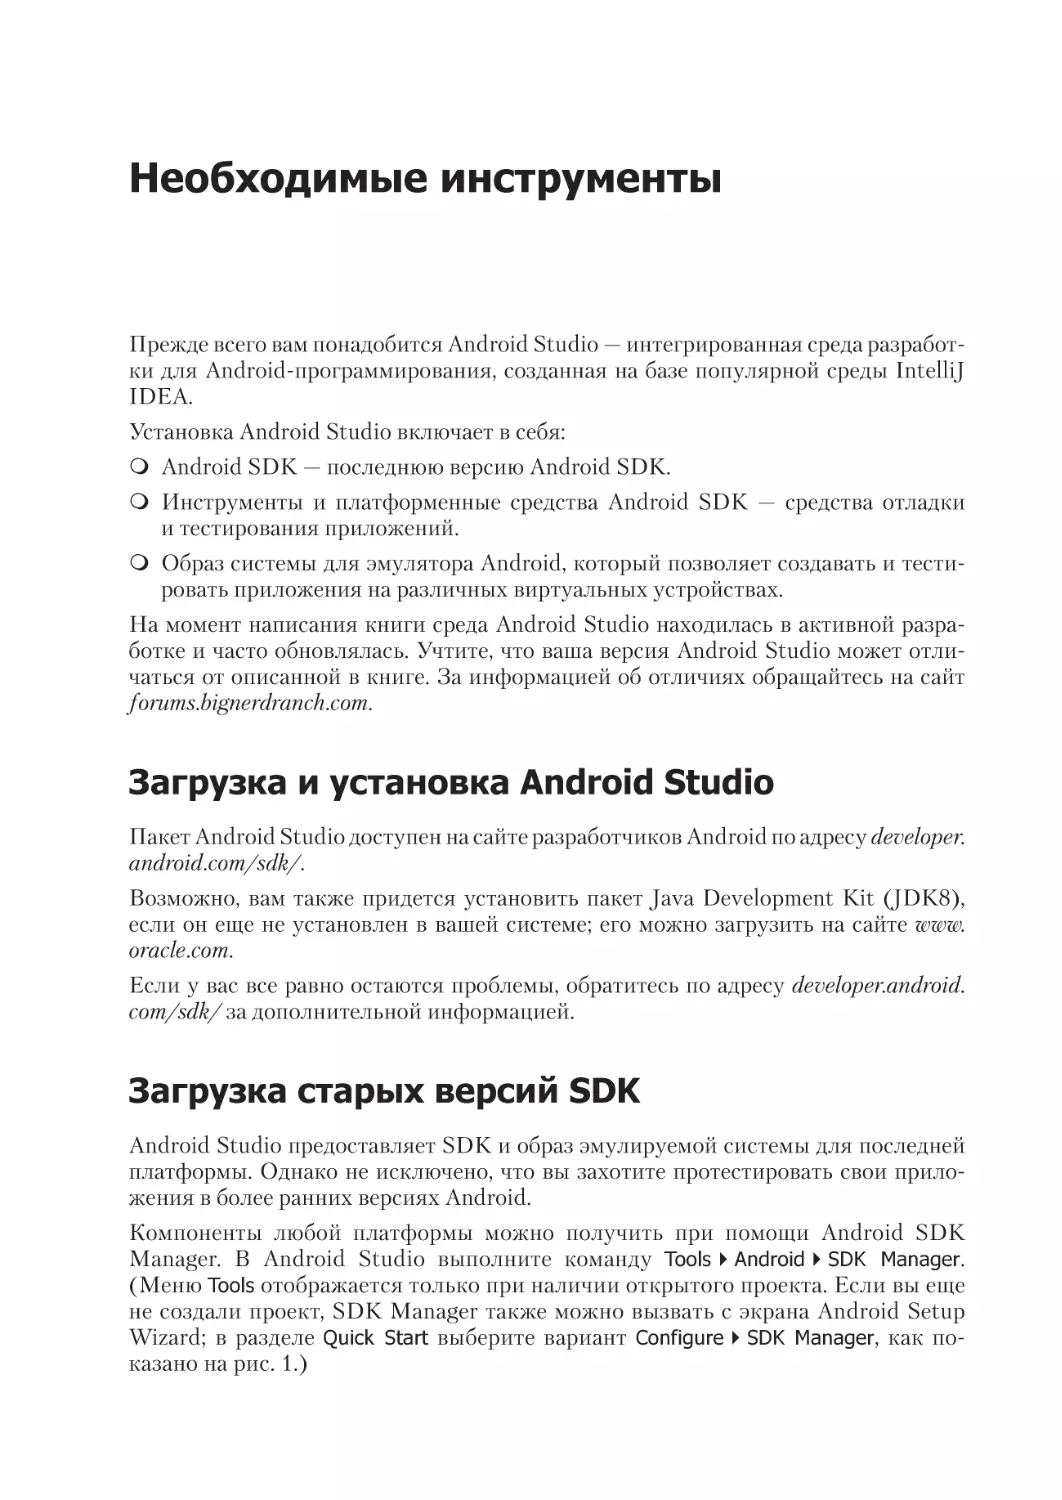 Необходимые инструменты
Загрузка и установка Android Studio
Загрузка старых версий SDK